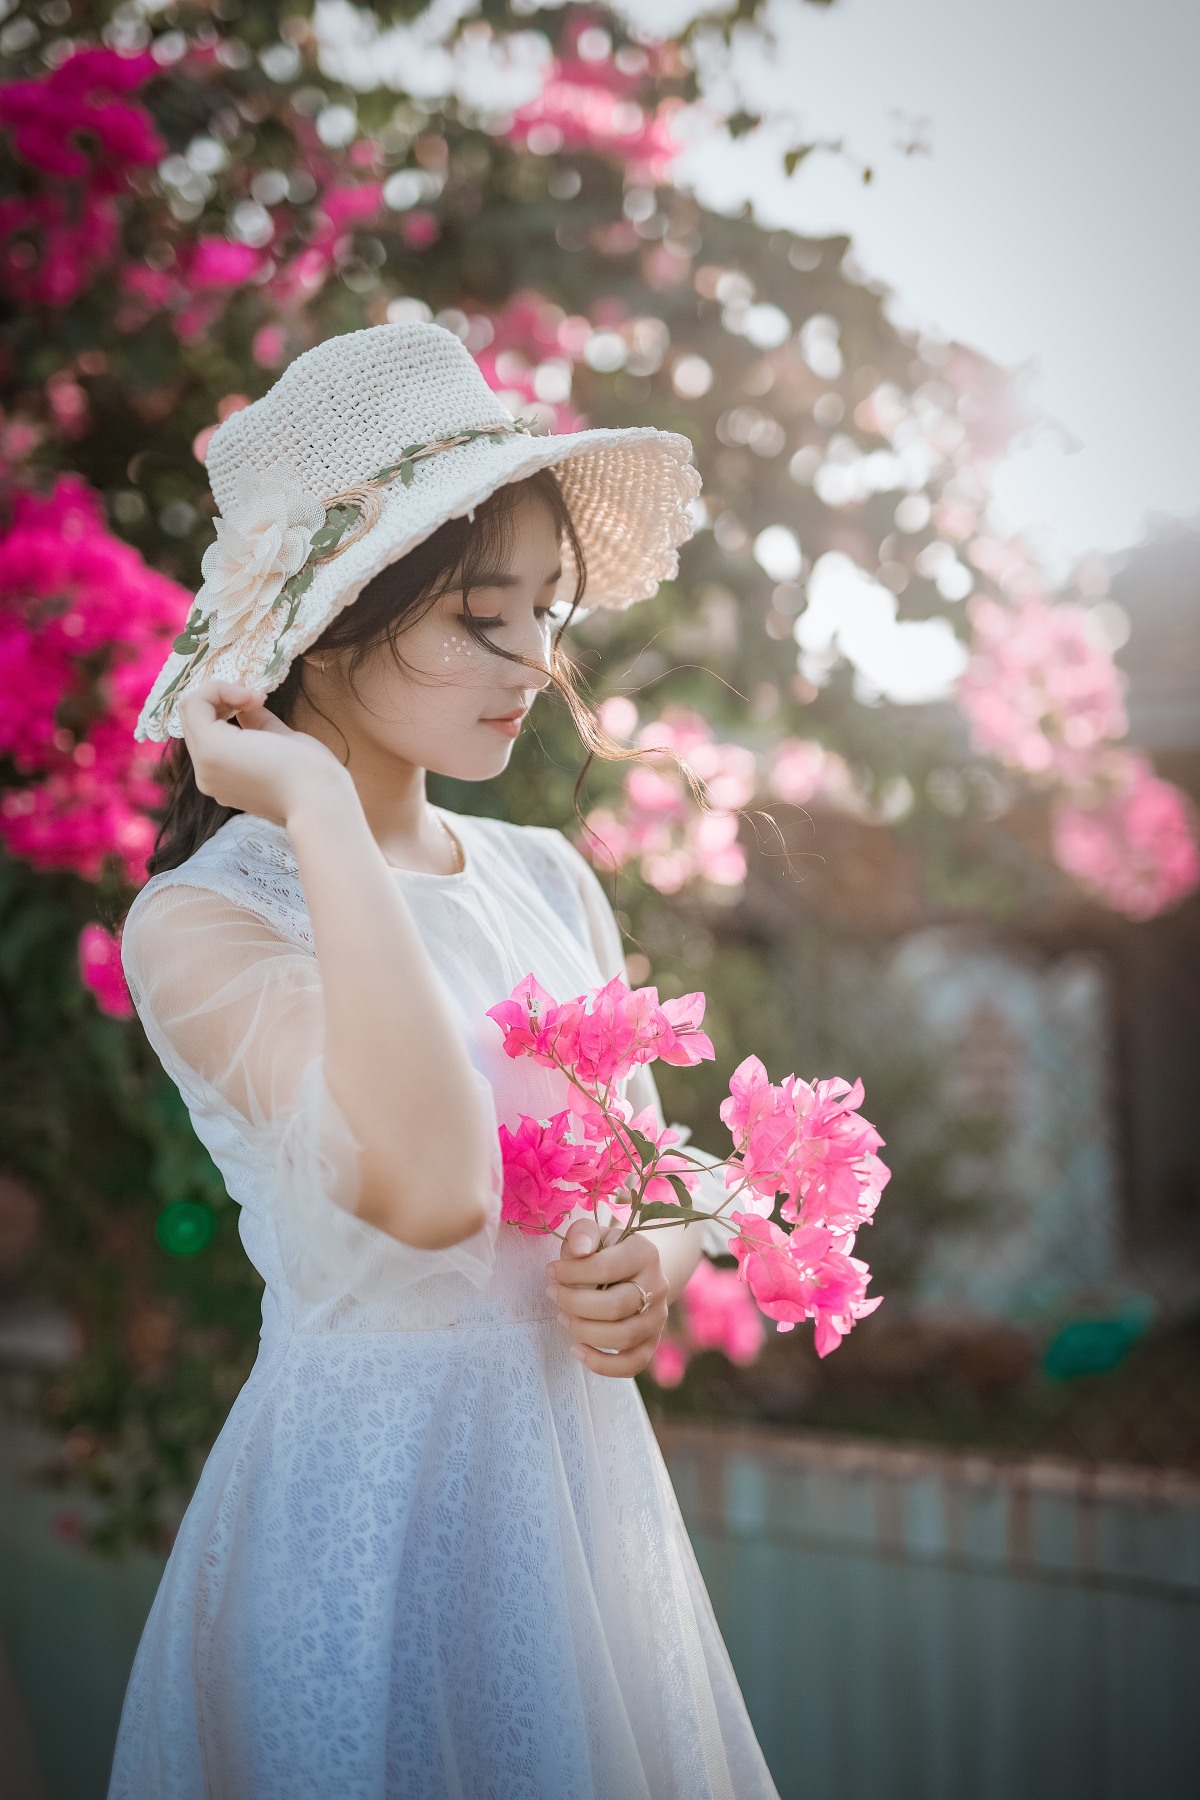 鲜花丛中微笑的清纯美女人物 - 免费可商用图片 - cc0.cn